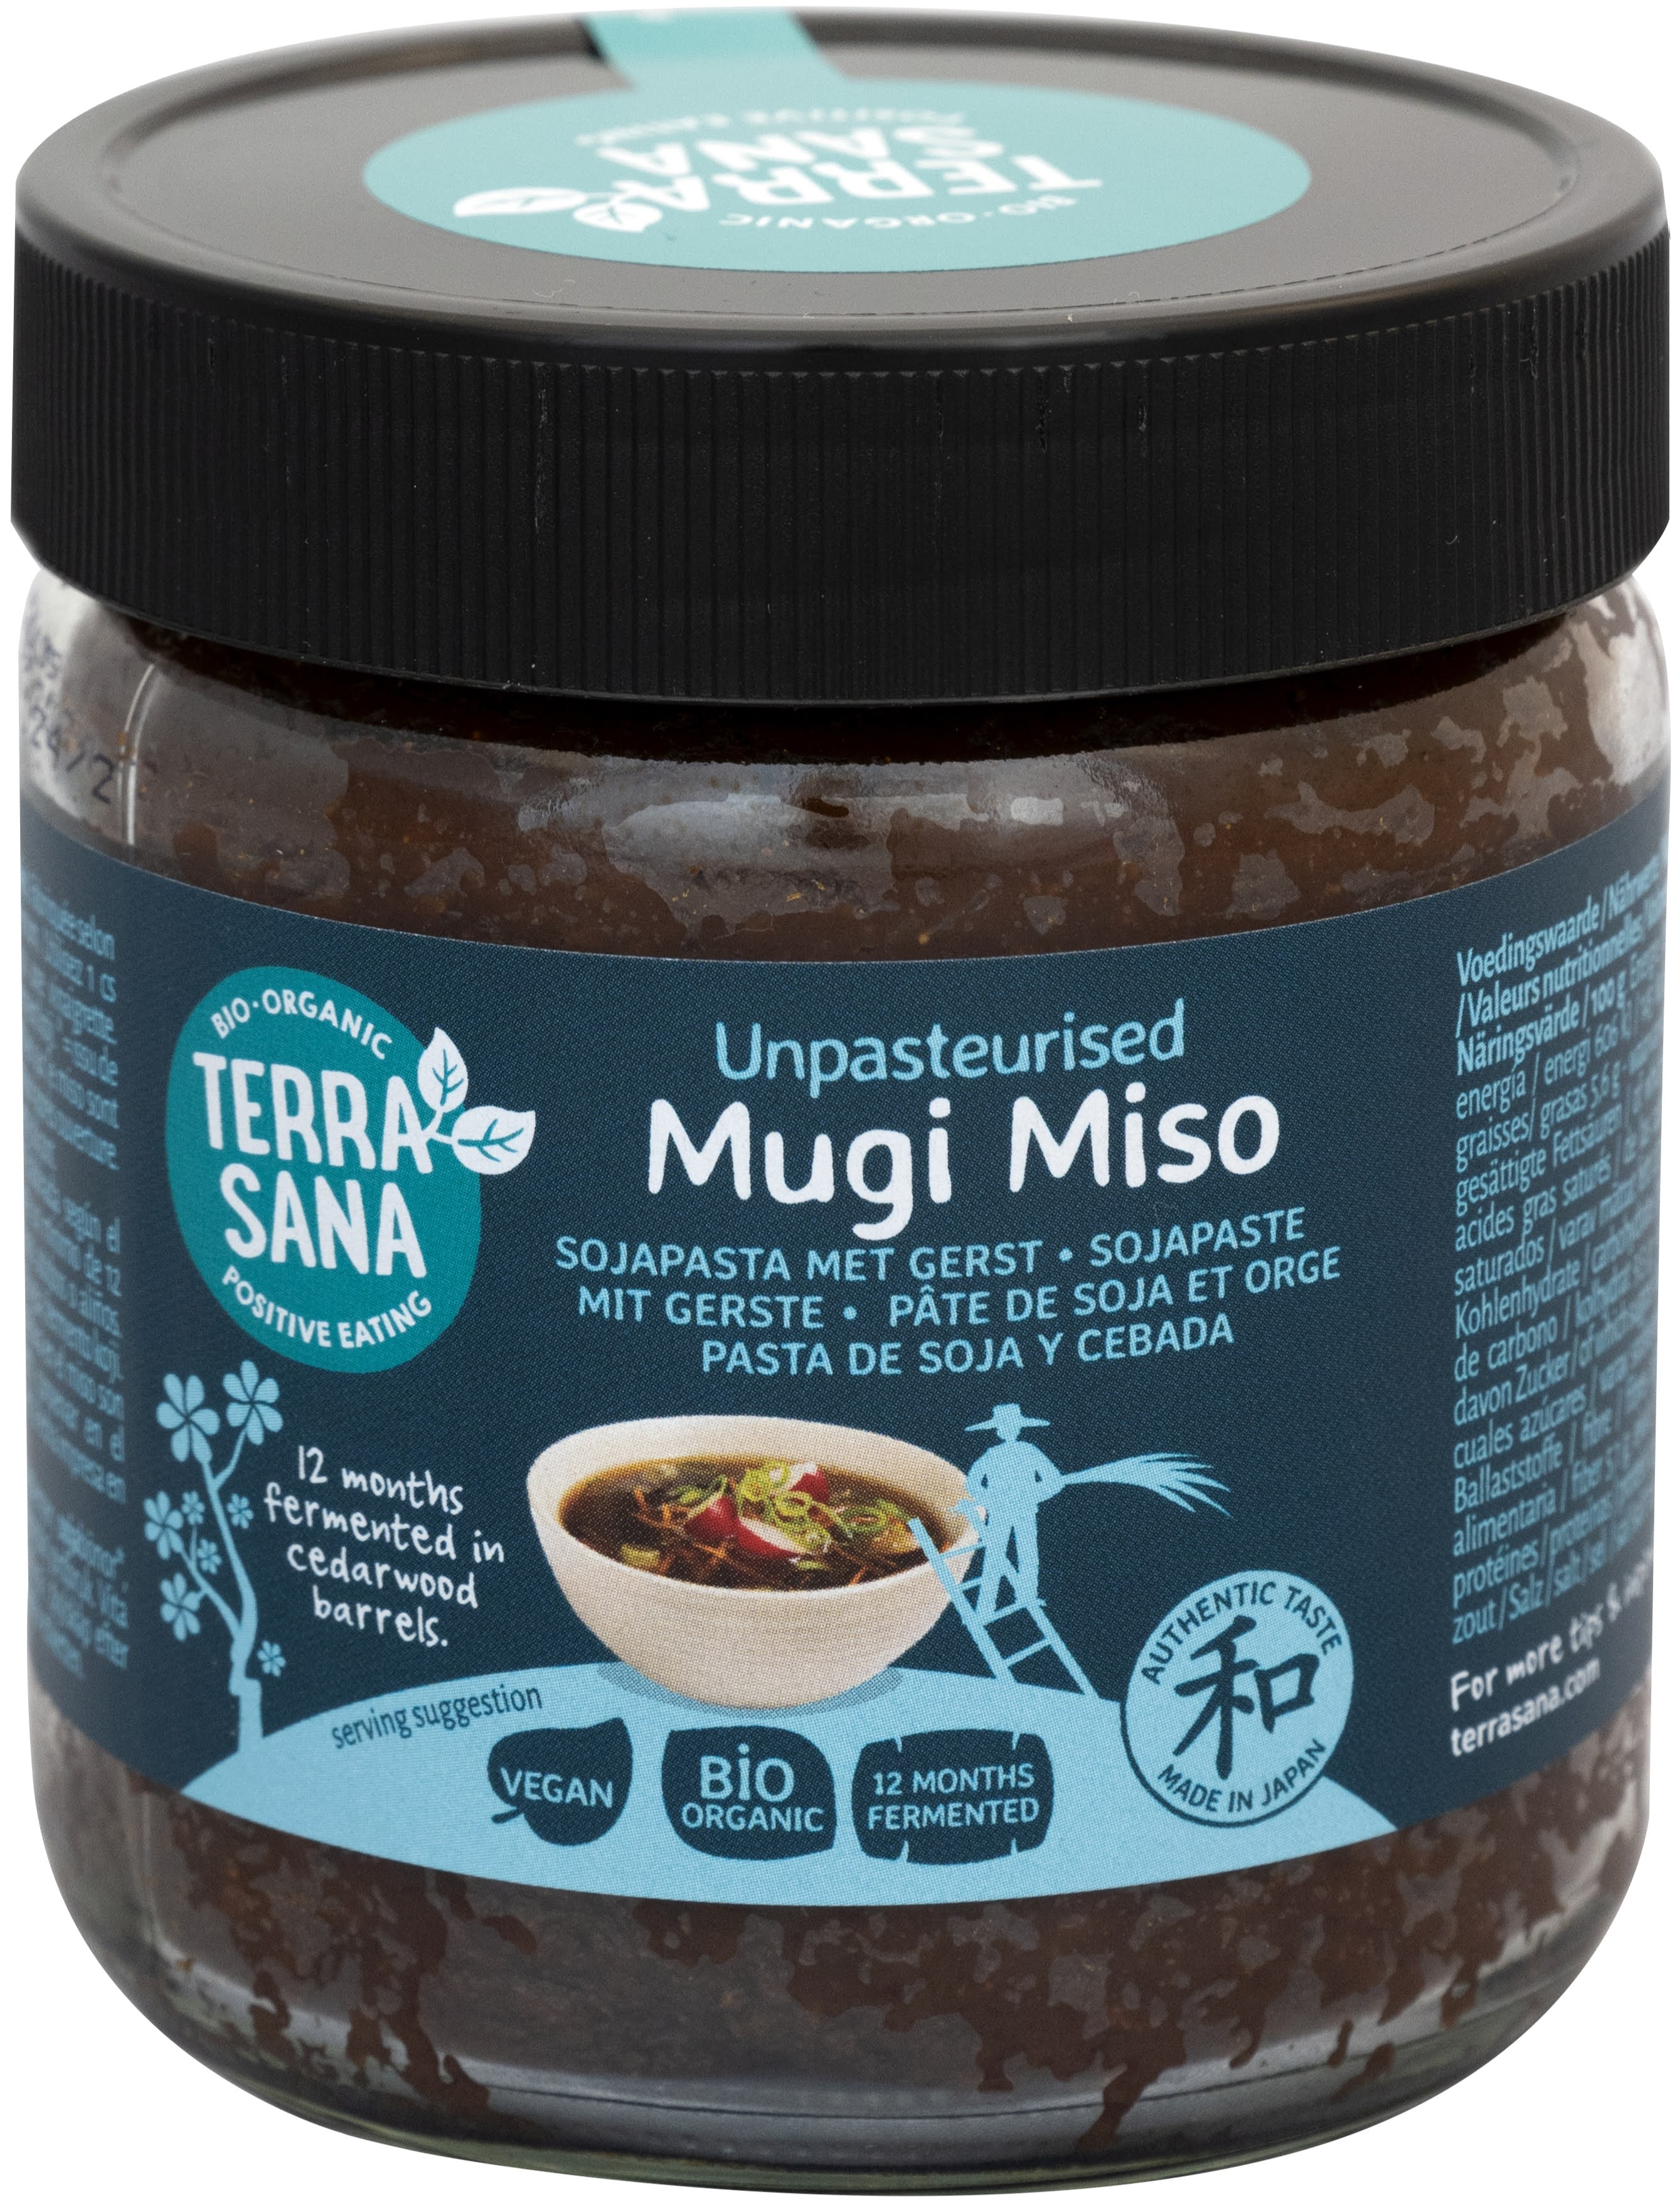 Mugi Miso (nicht pasteurisiert) - Sojapaste mit Gerste